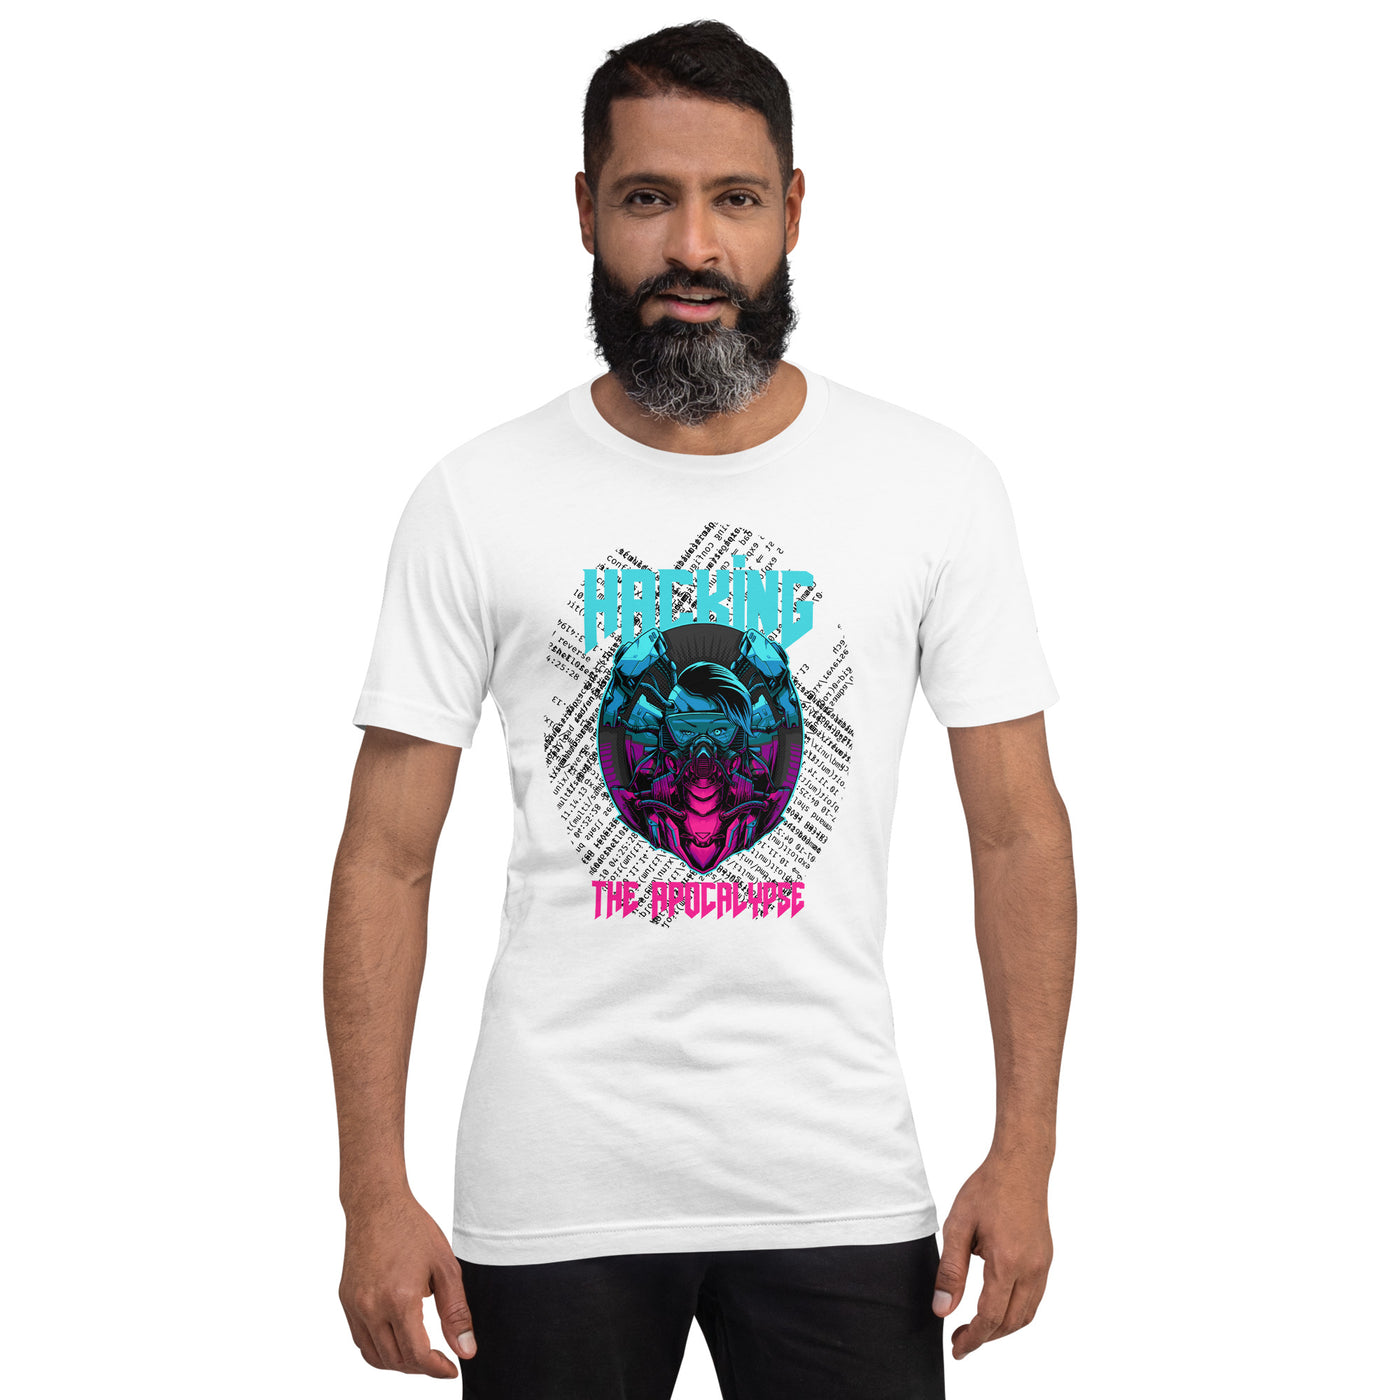 Hacking the apocalypse V2 - Unisex t-shirt